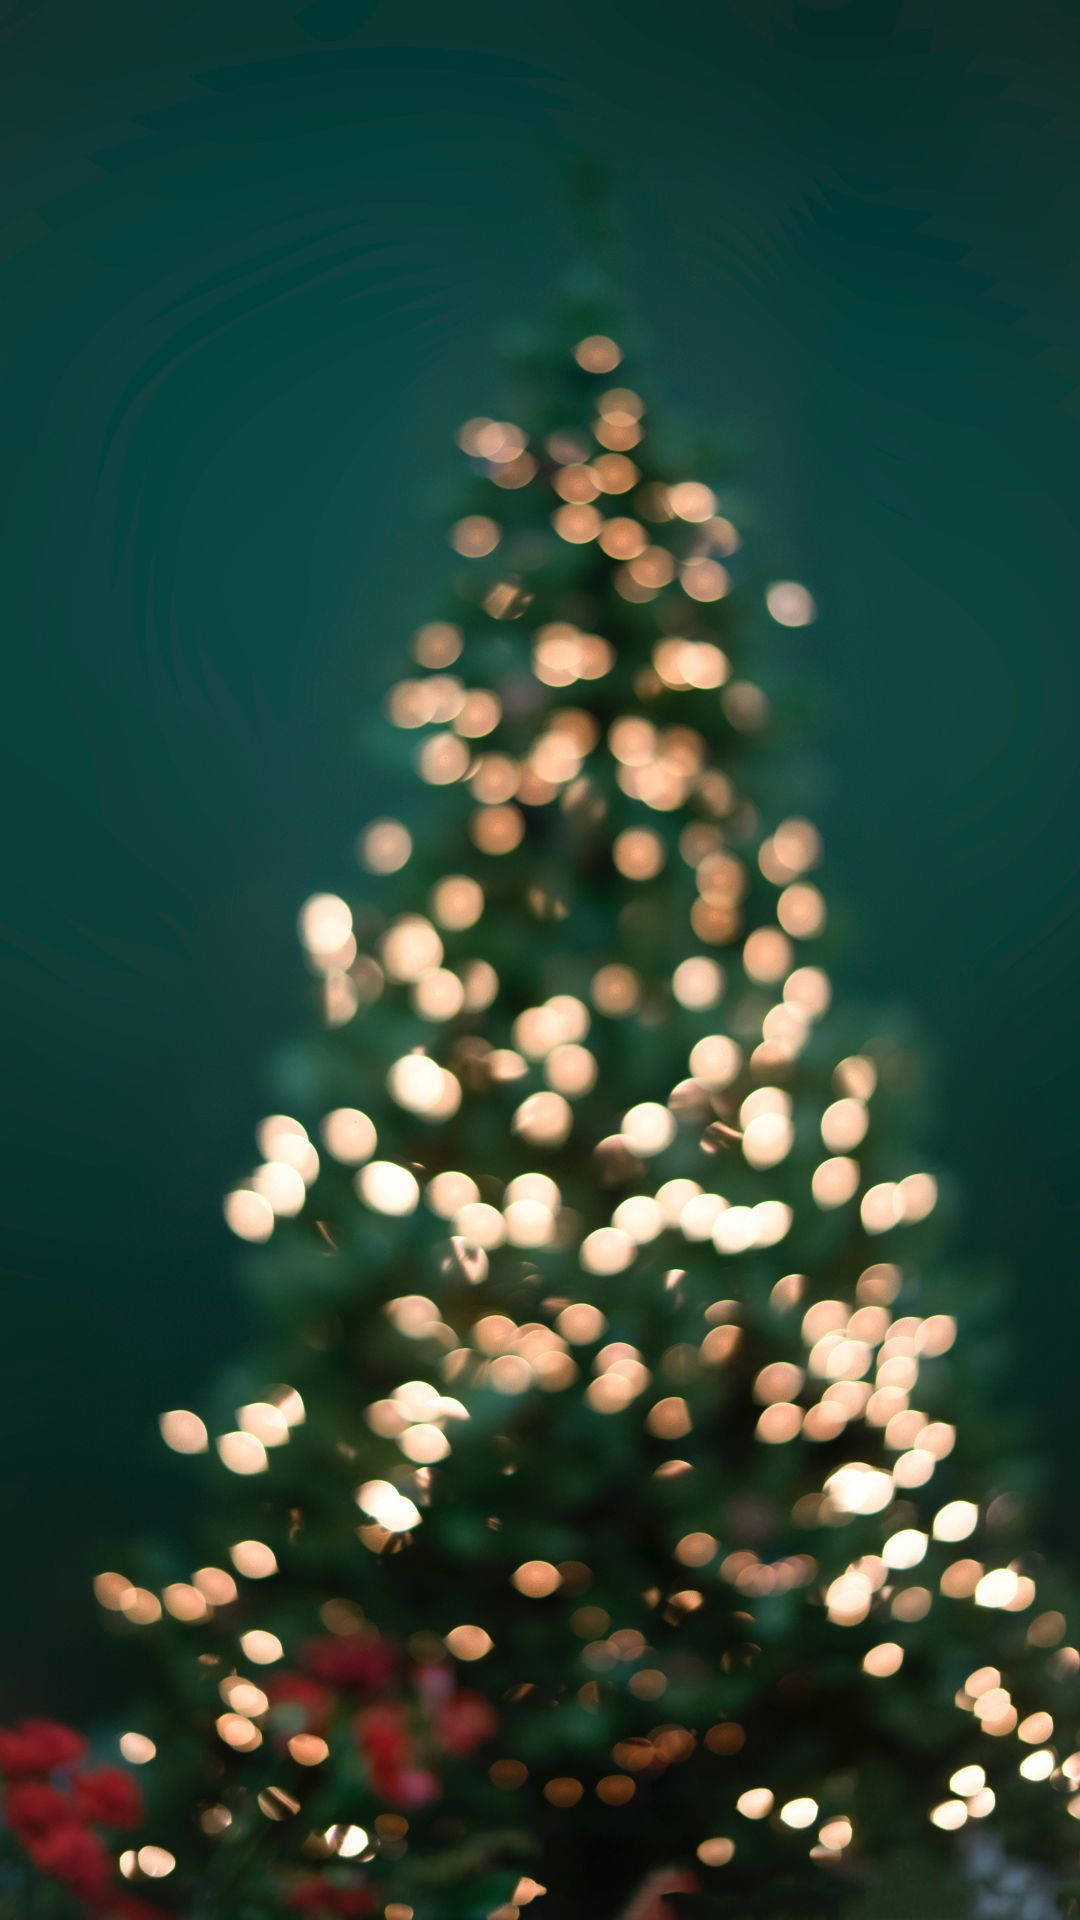 Lucesde Navidad En El Árbol Del Iphone Desenfocadas. Fondo de pantalla